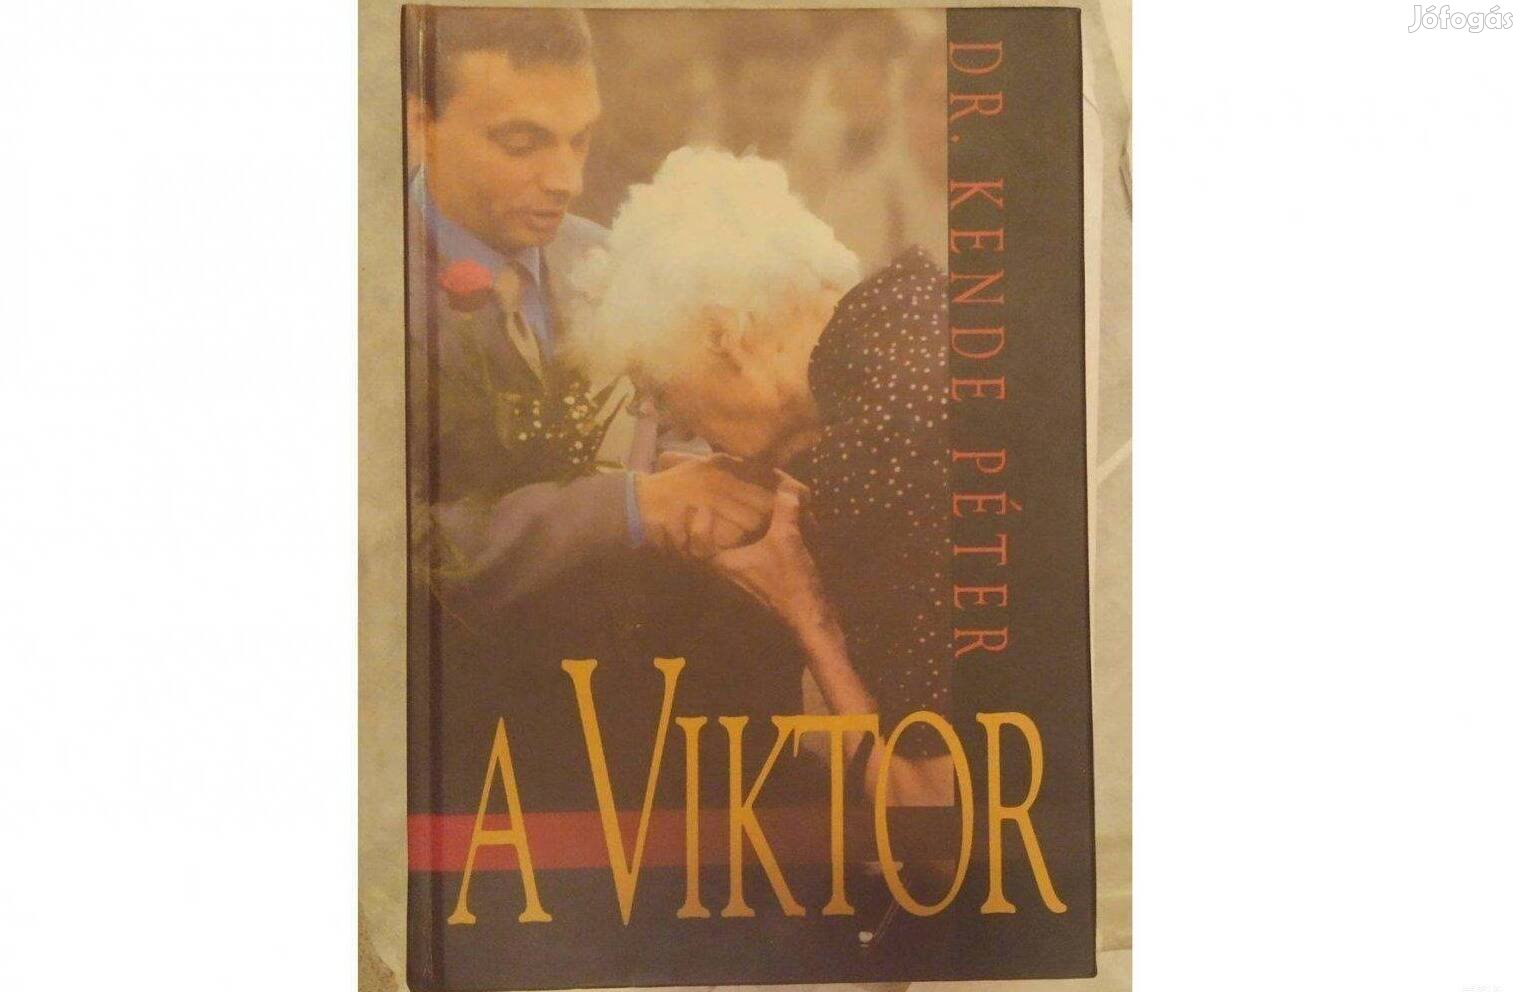 A Viktor - Dr. Kende Péter könyve (Orbán Viktor).Kitűnő állapotban van